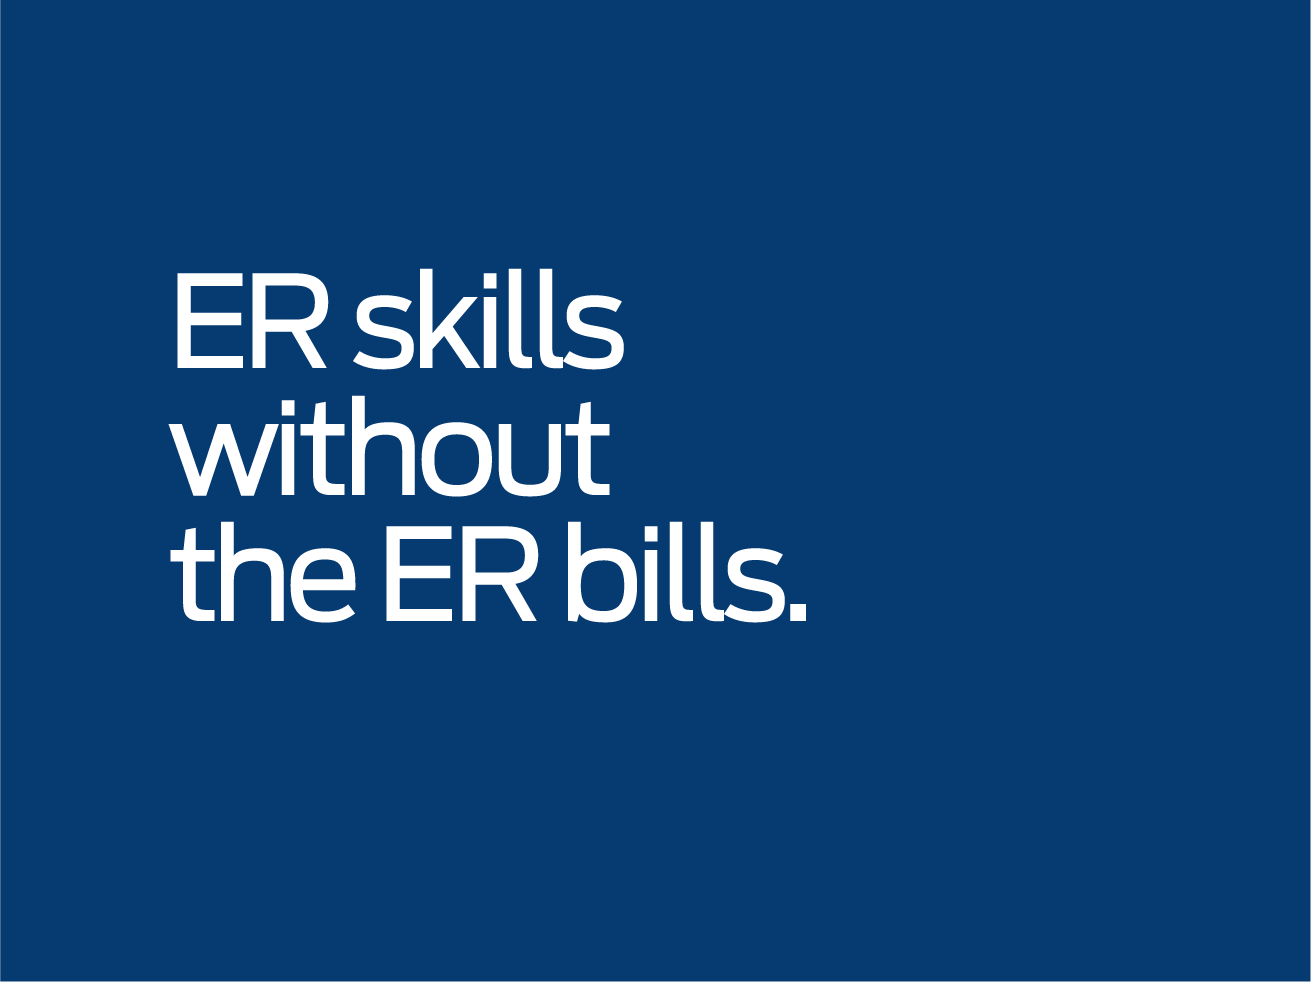 ER skills witout the ER bills